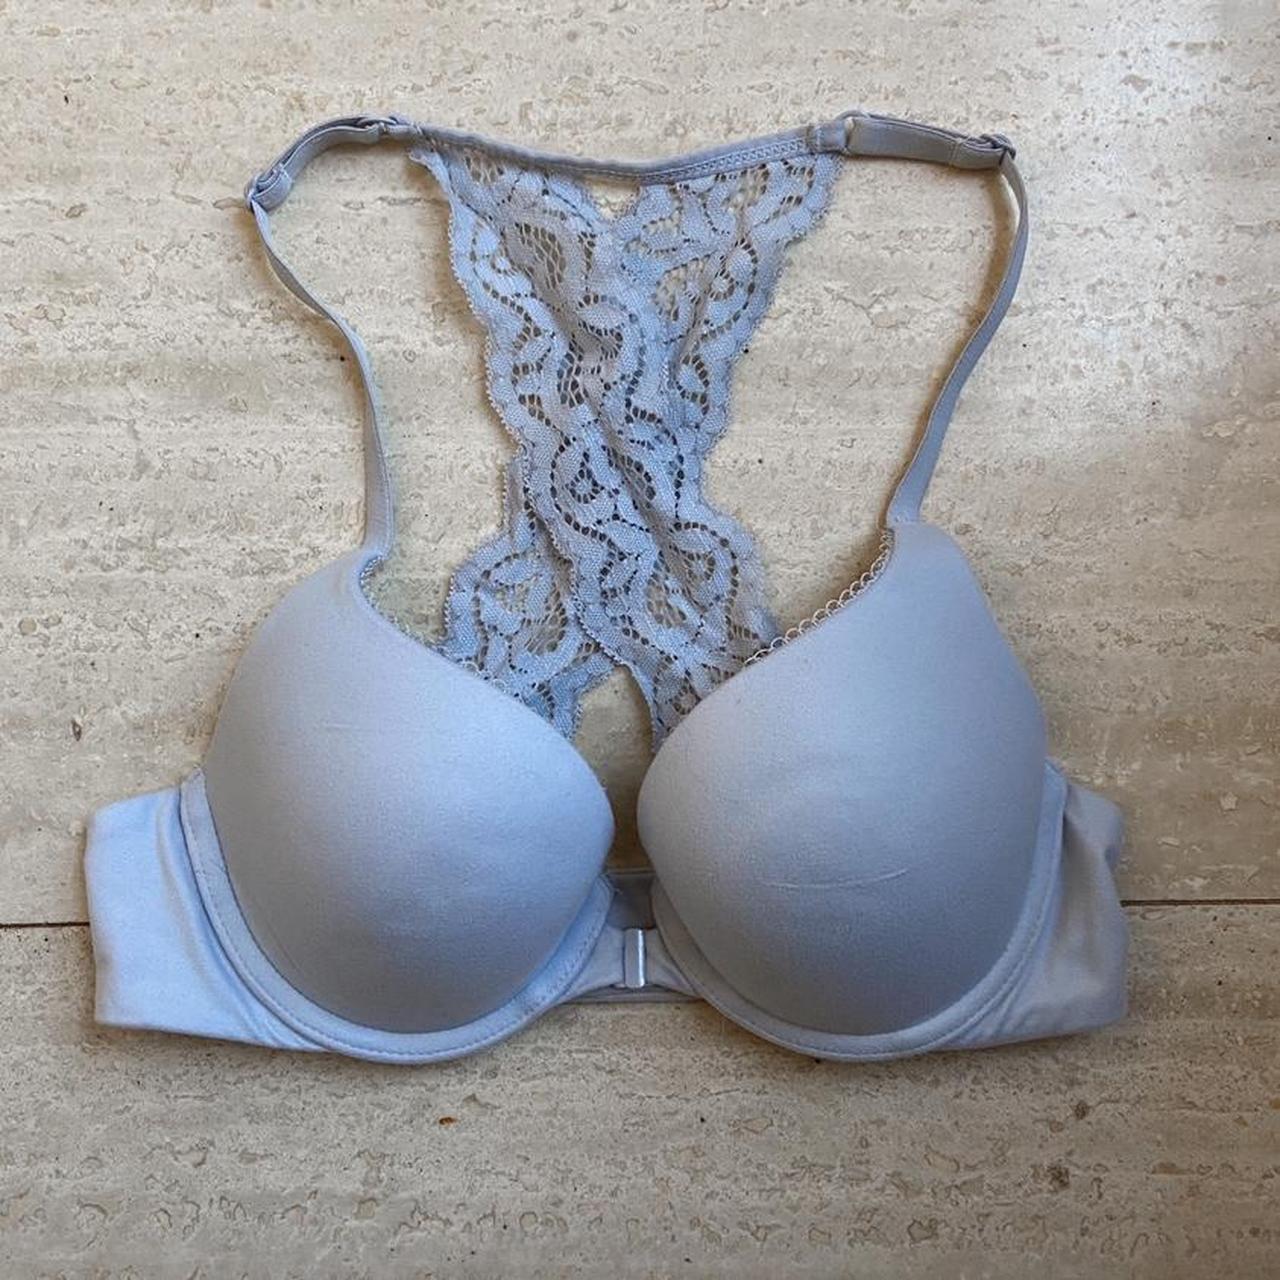 Victoria's Secret bralet bra crop top size 32C new! - Depop